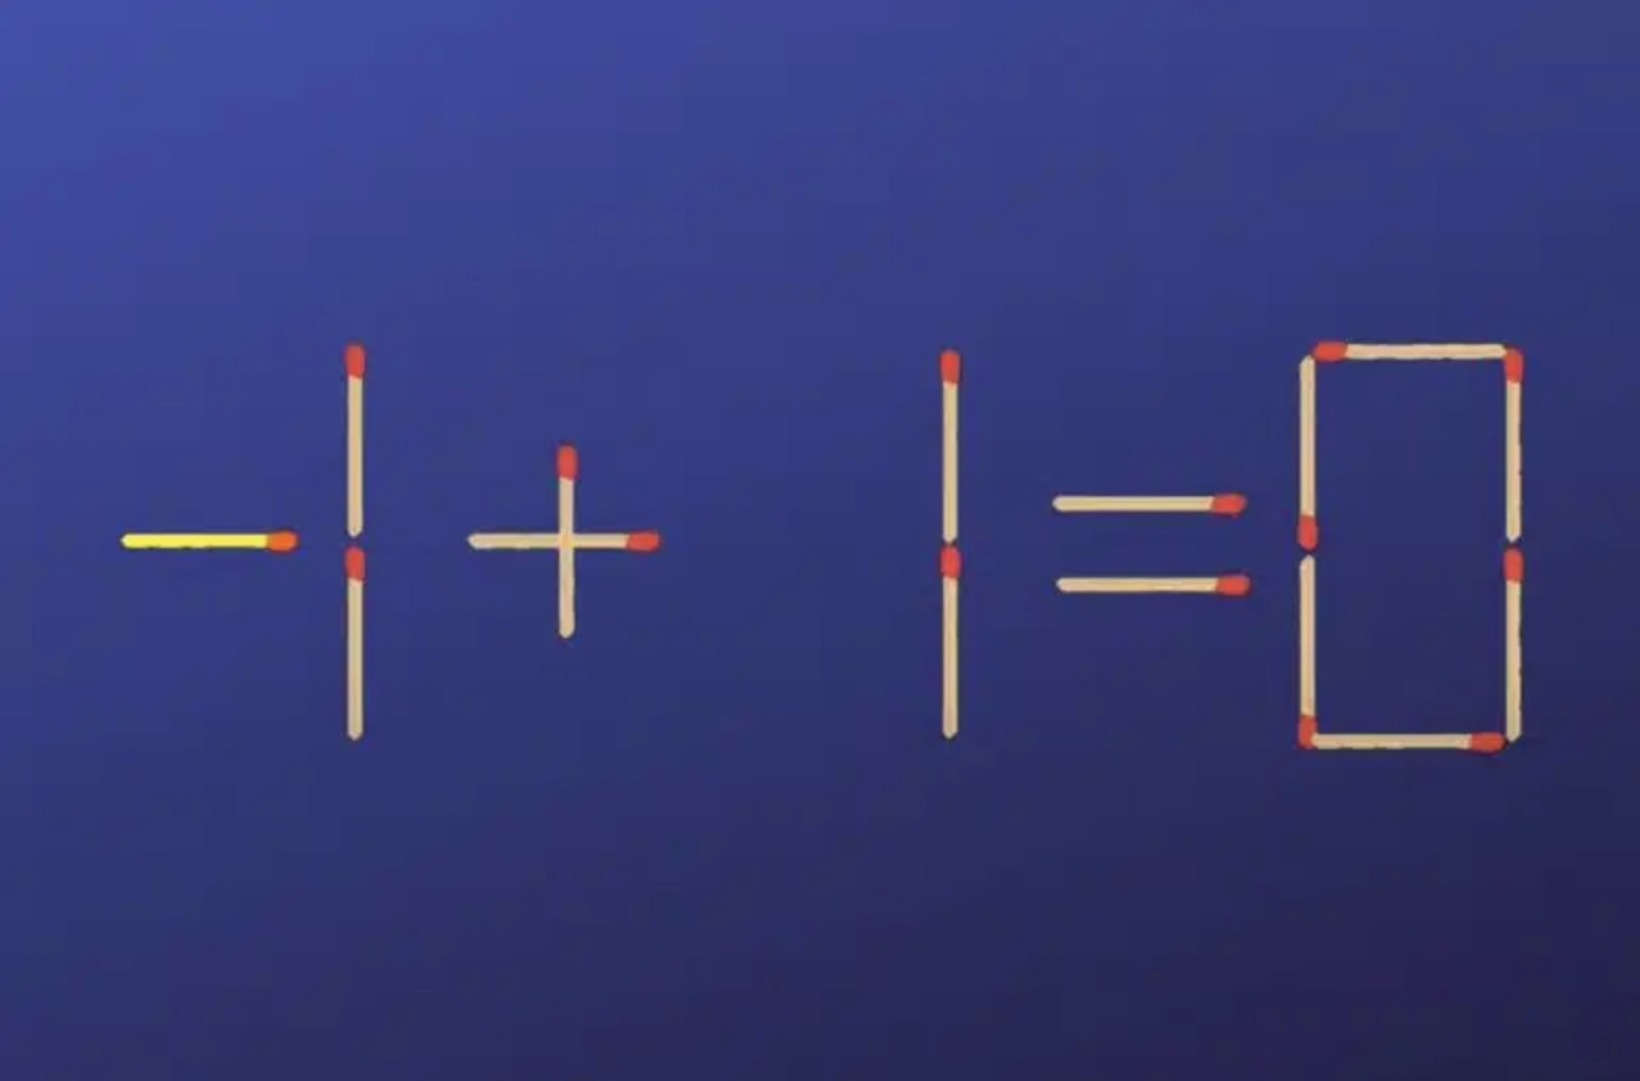 Gabarito - Mova apenas um palito para resolver a equação. (Foto: Reprodução)